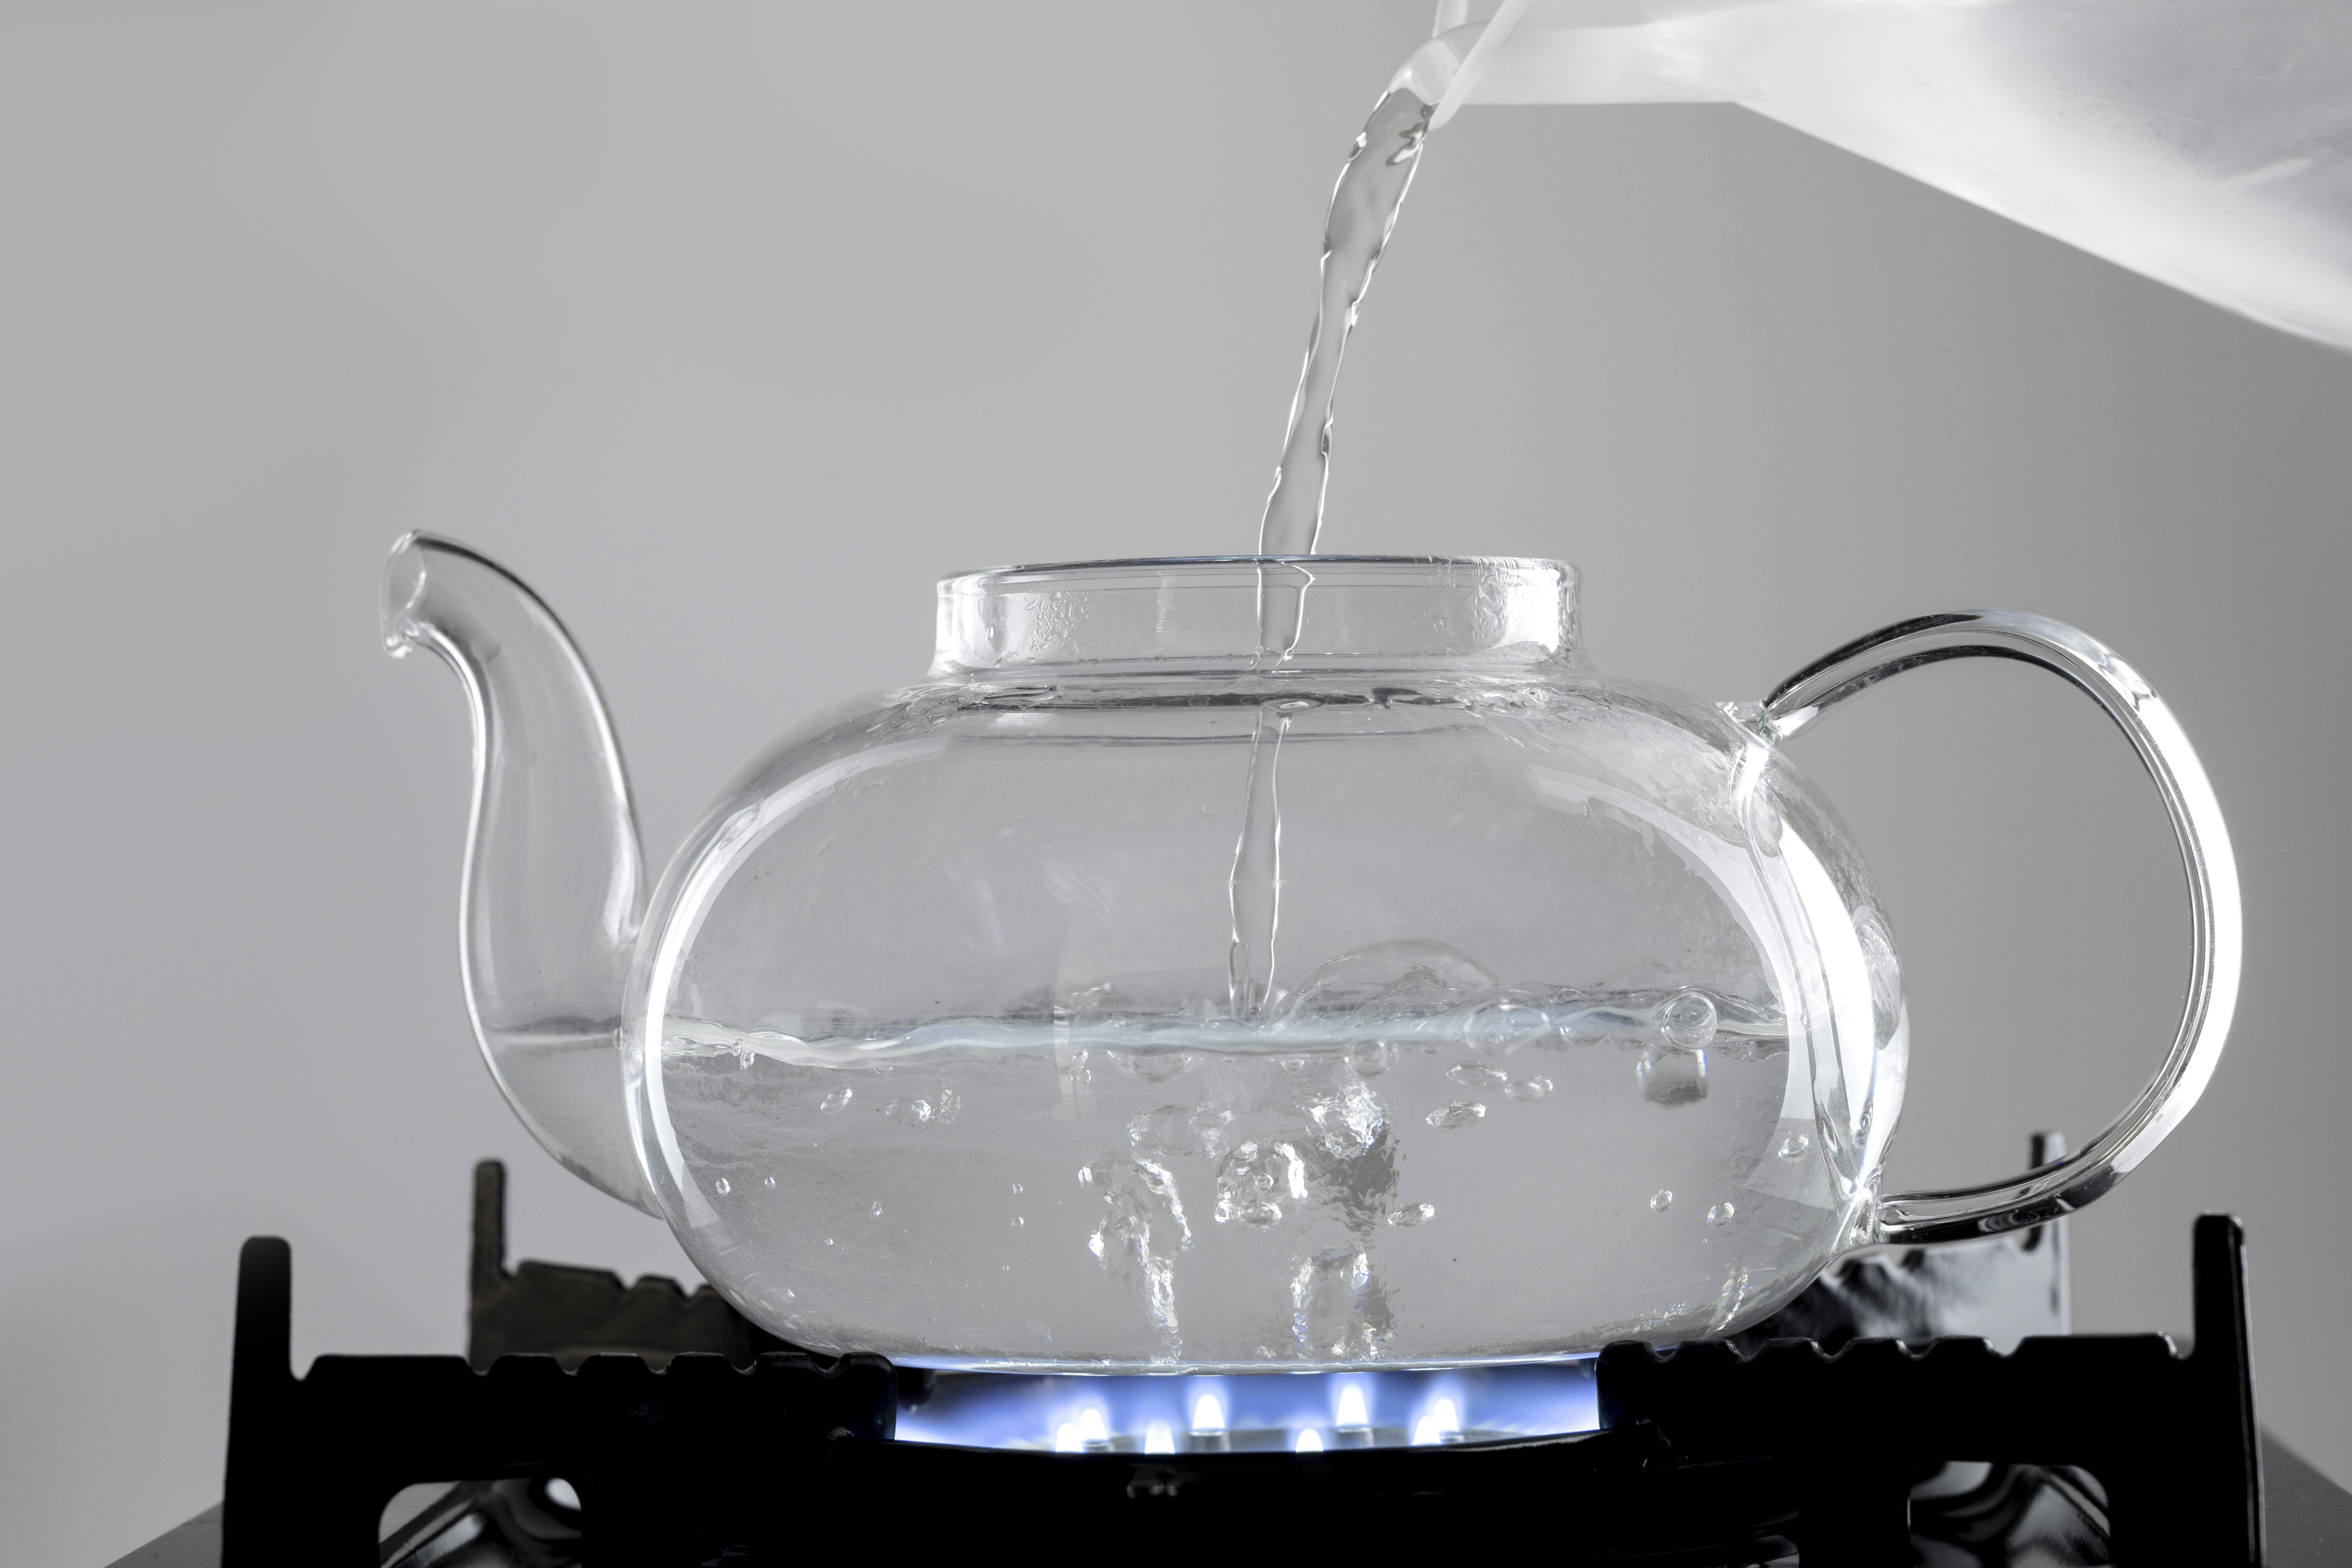 가스레인지에 불을 켜고&#44; 그 위에 유리주전자를 놓고 물을 반쯤 부으면서&#44; 끓이고 있는 사진